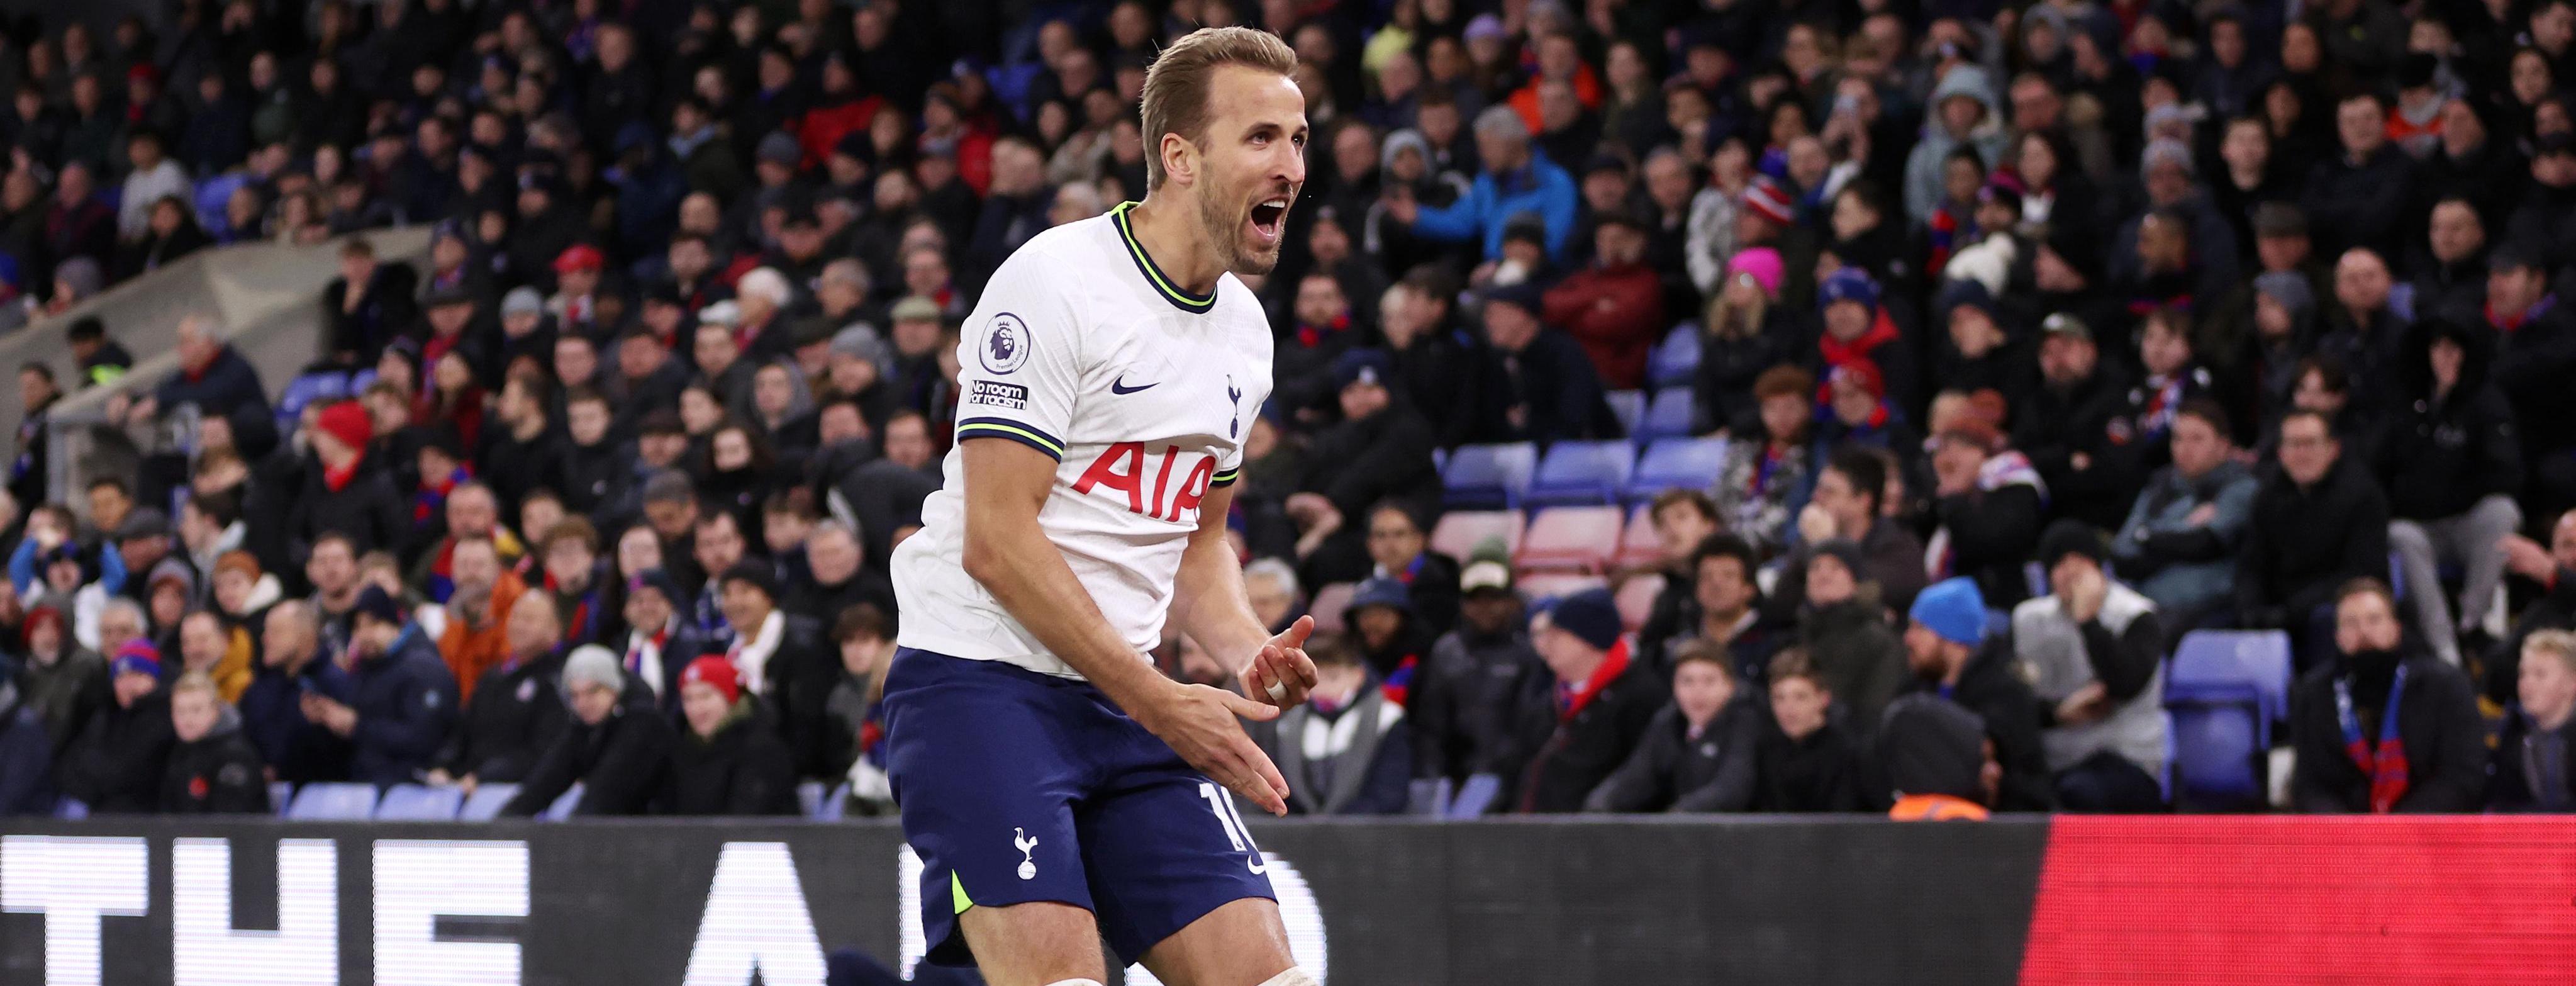 Crystal Palace 0-4 Tottenham: Harry Kane dan Son Heung Min Bawa The Lilywhites ke Jalur Kemenangan